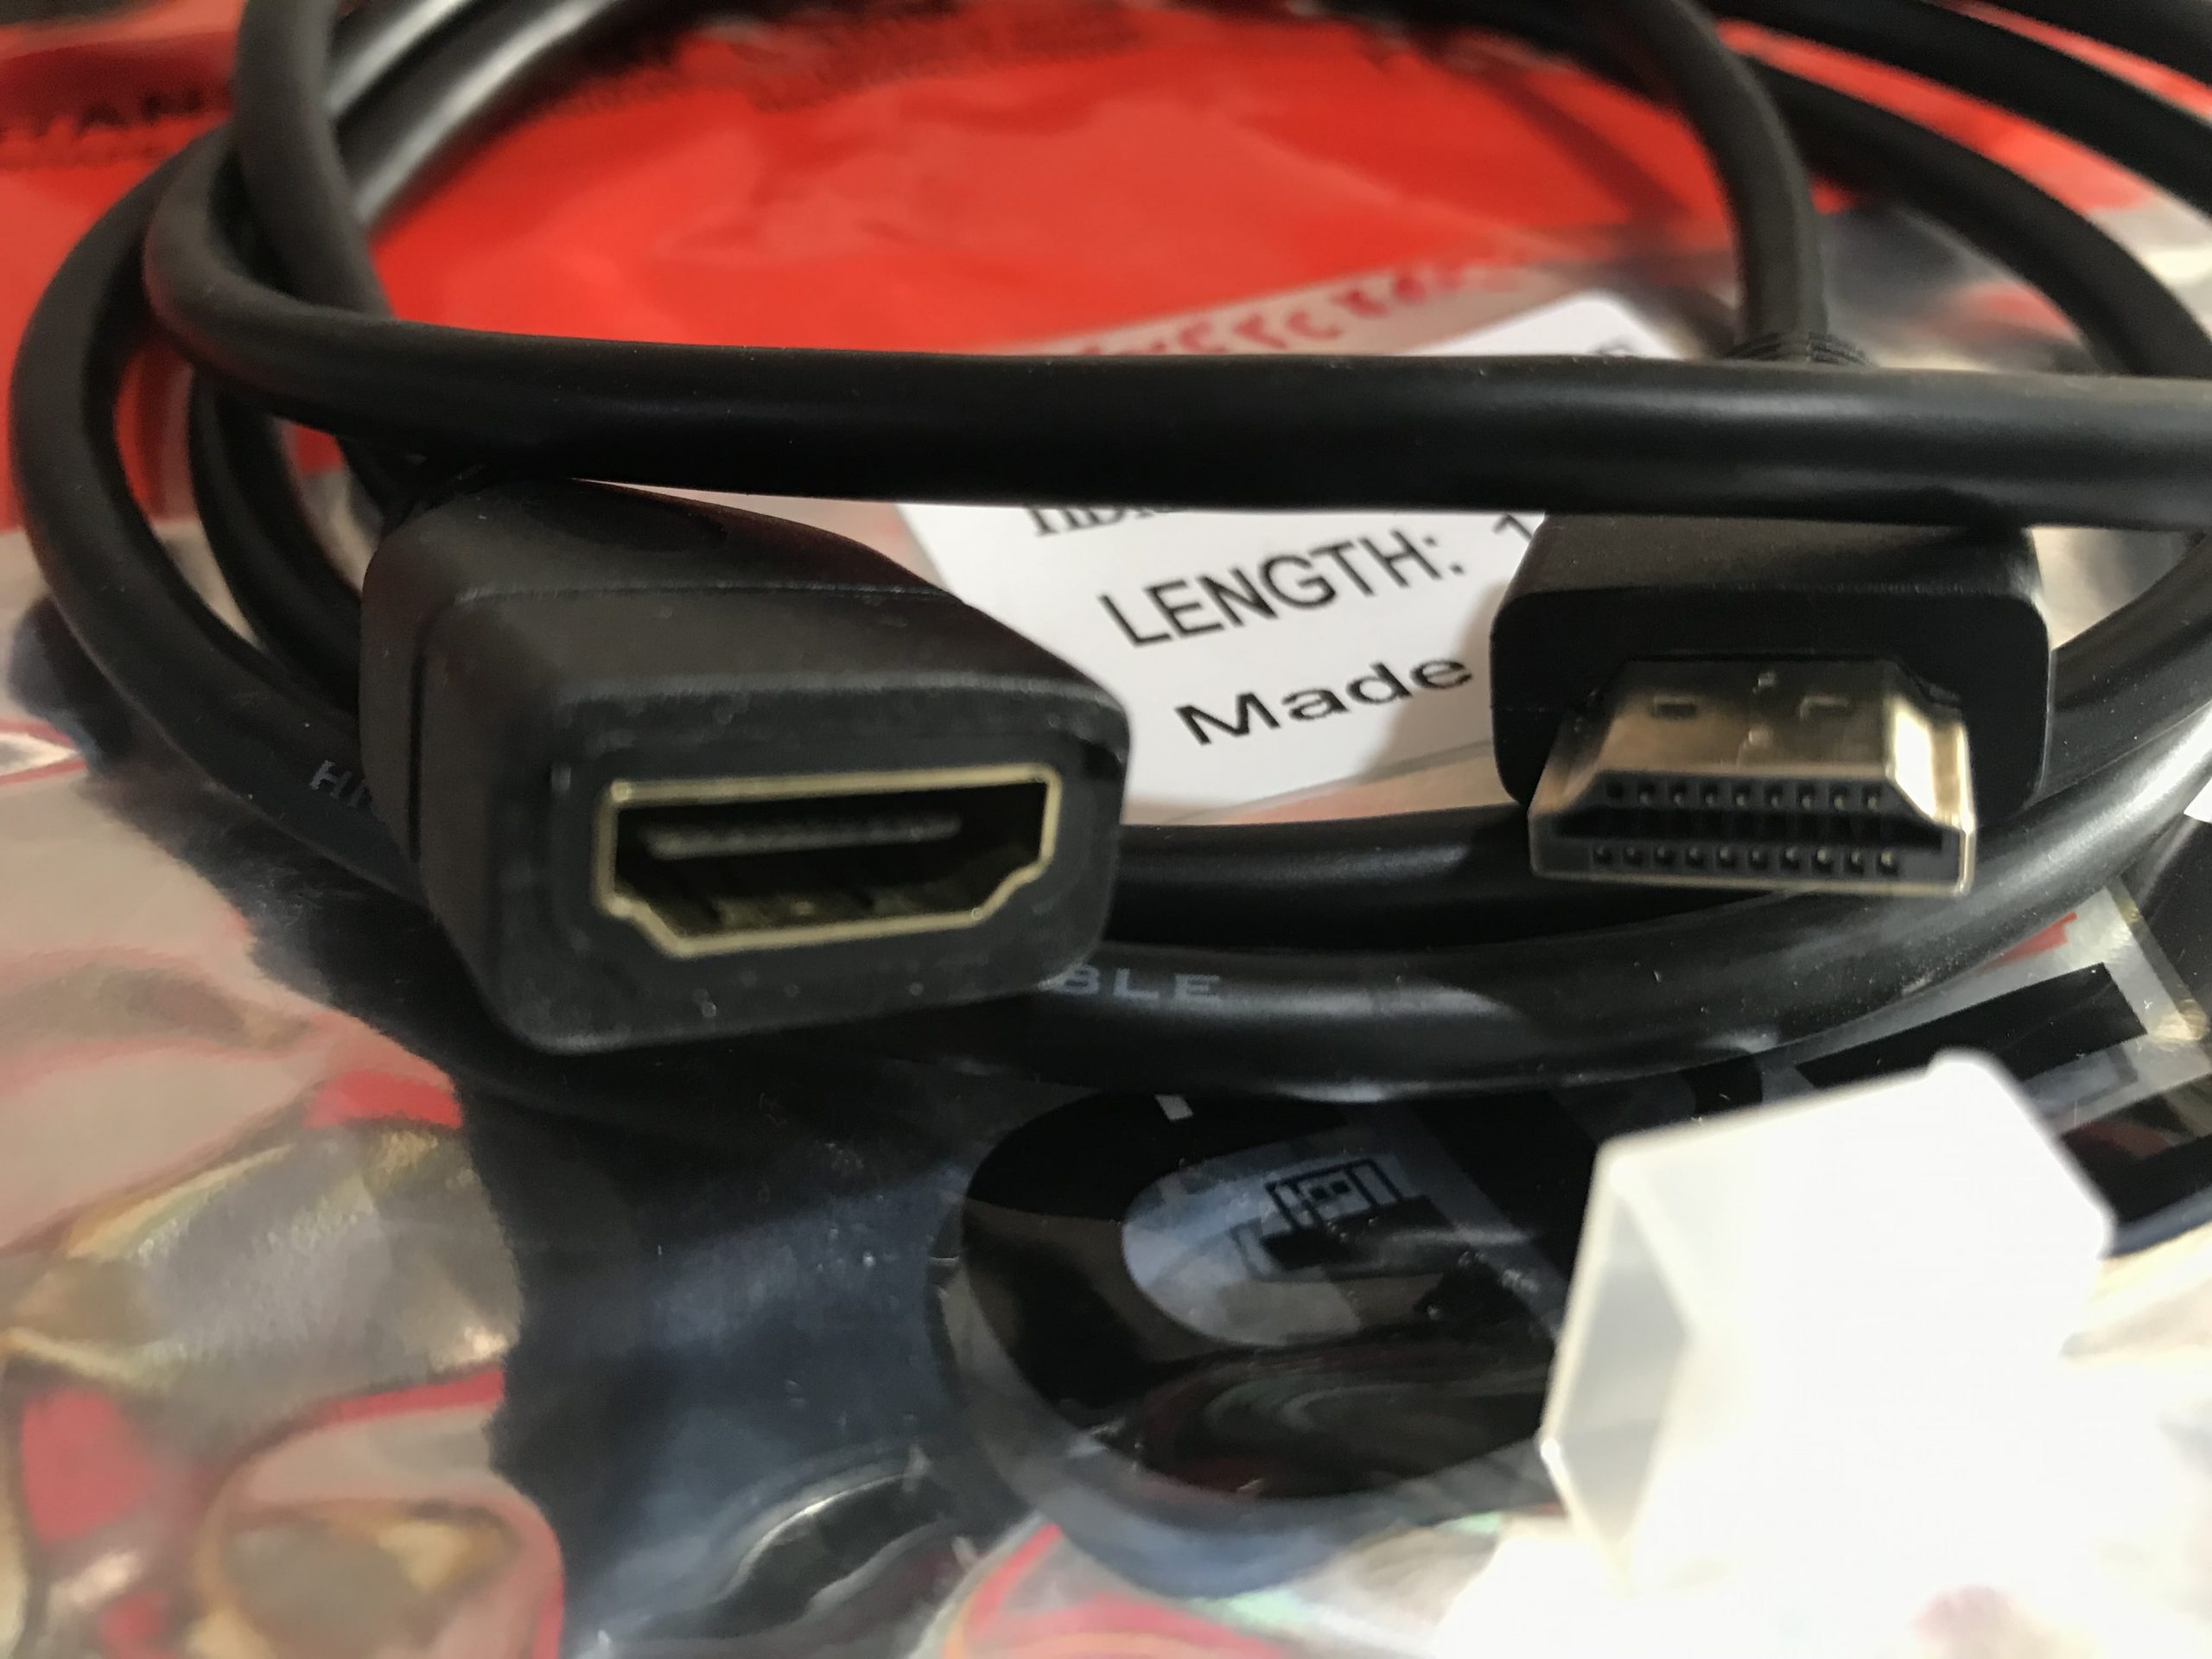 کابل افزایشی HDMI